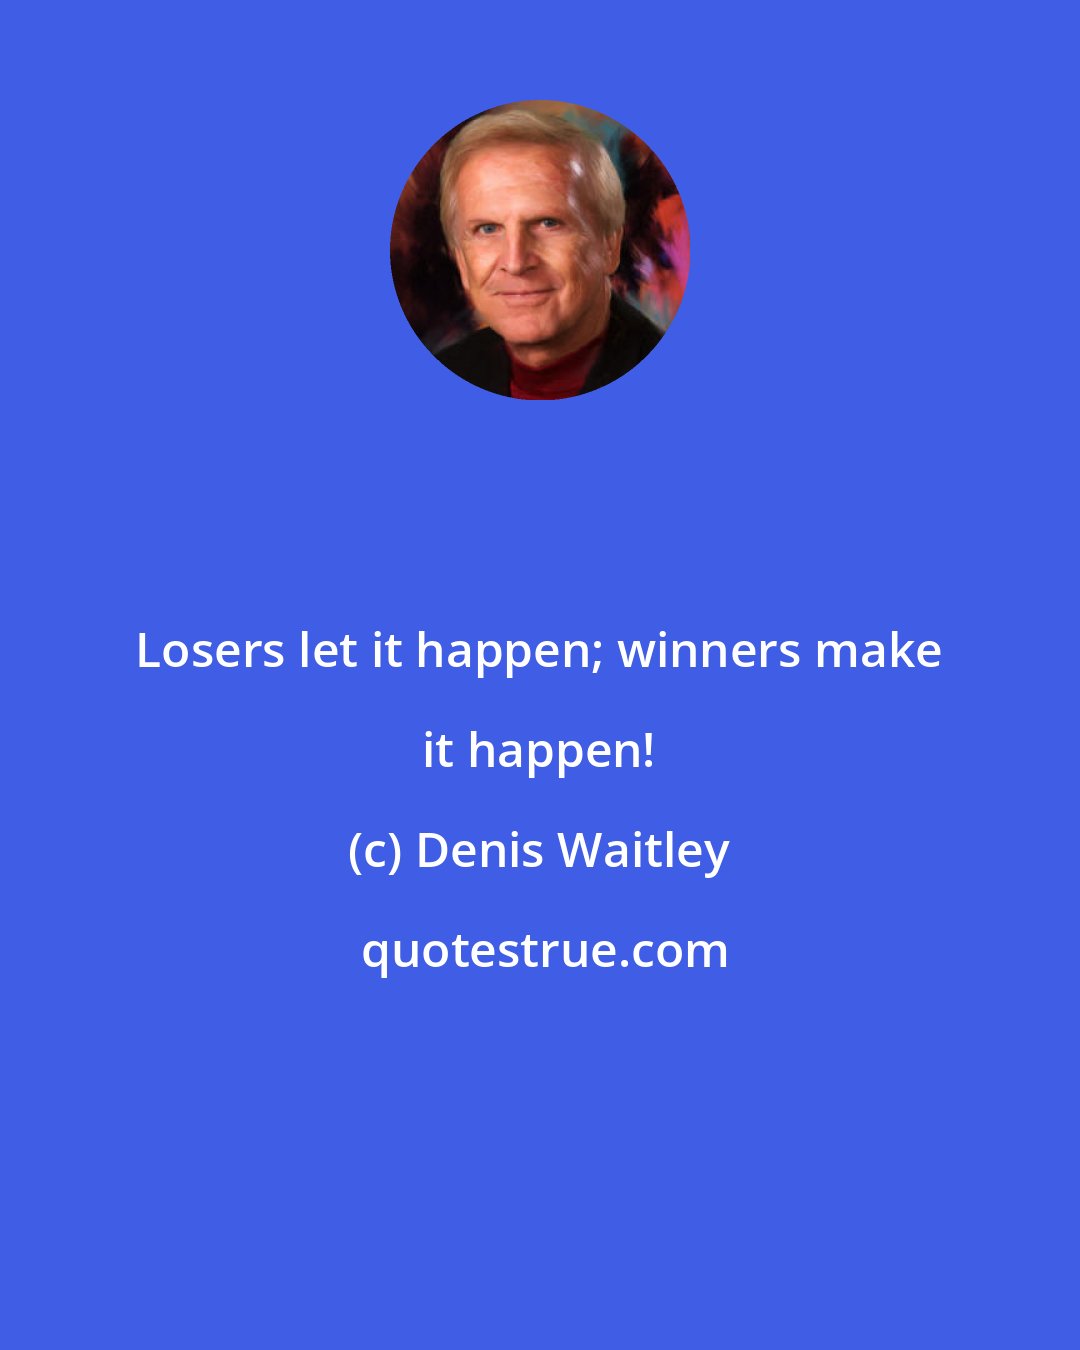 Denis Waitley: Losers let it happen; winners make it happen!